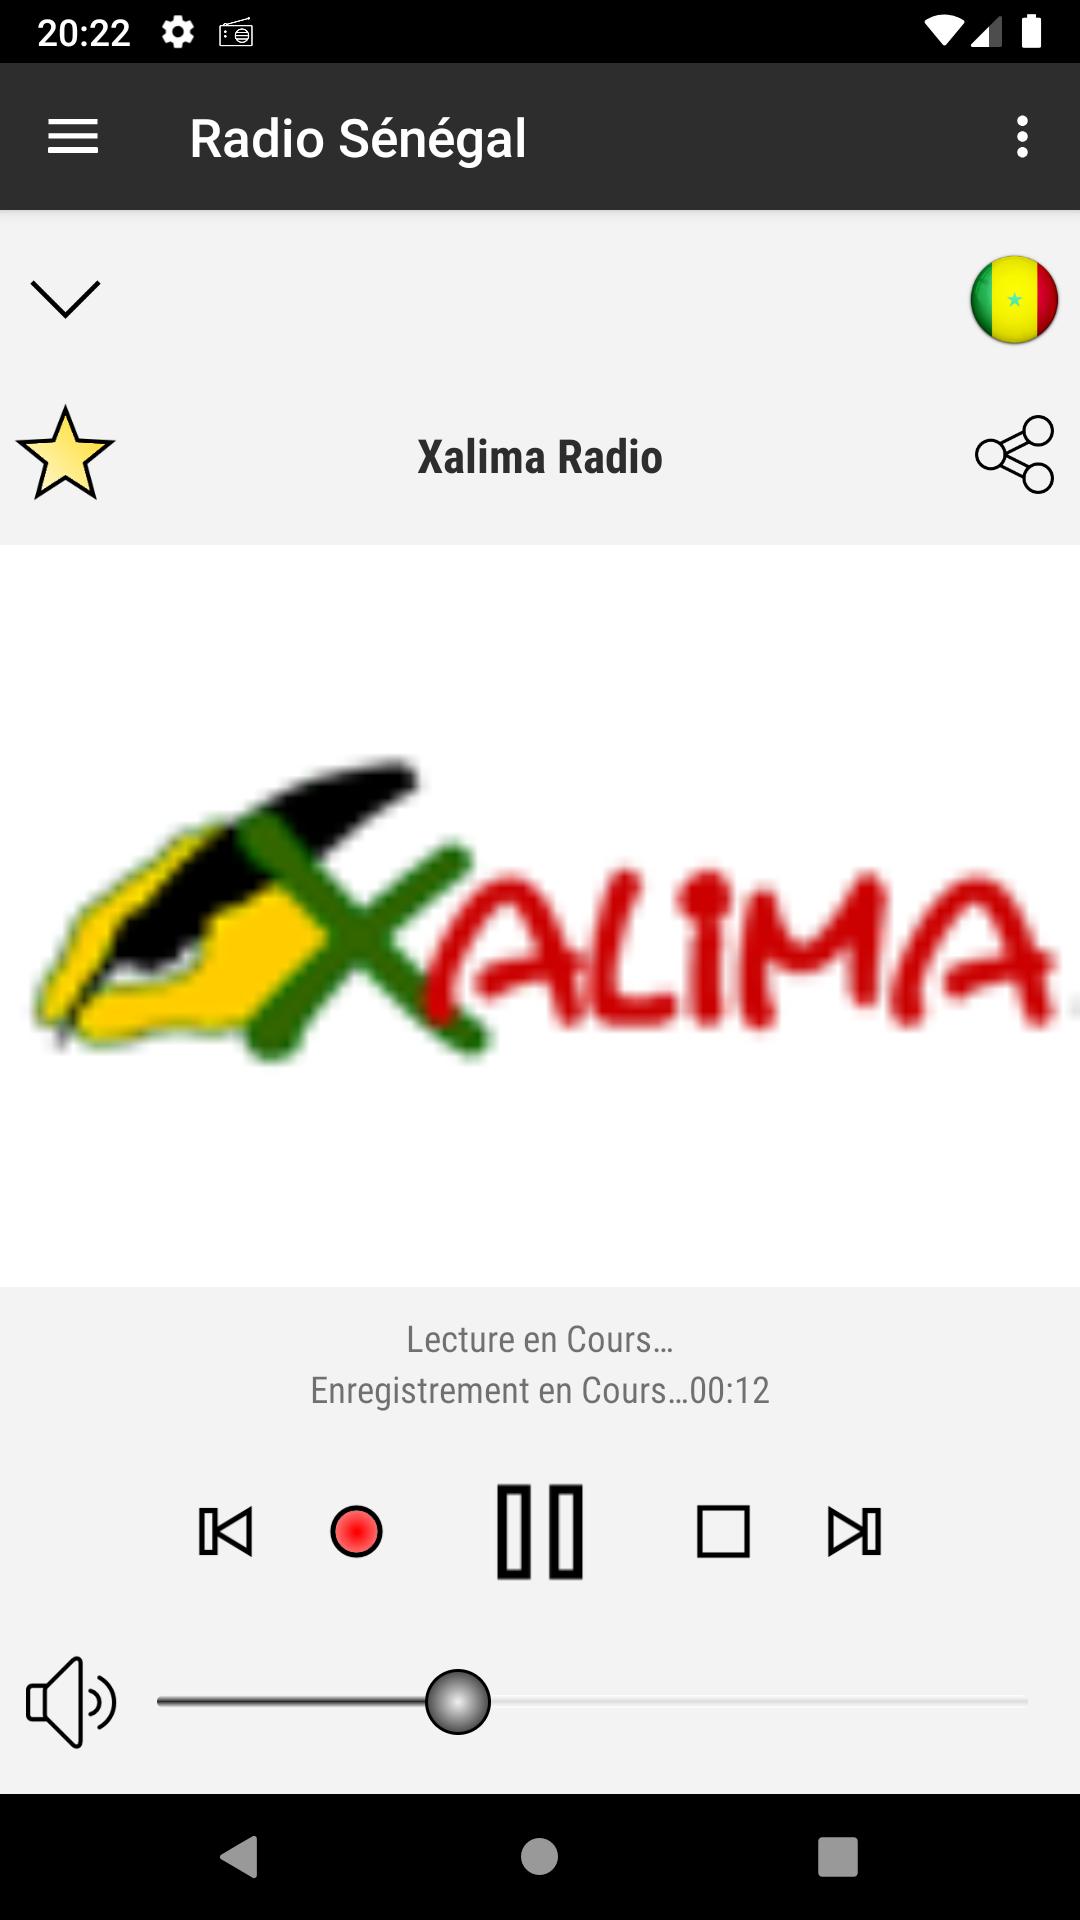 Radio Sénégal : Radios Sénégalaises en direct for Android - APK Download